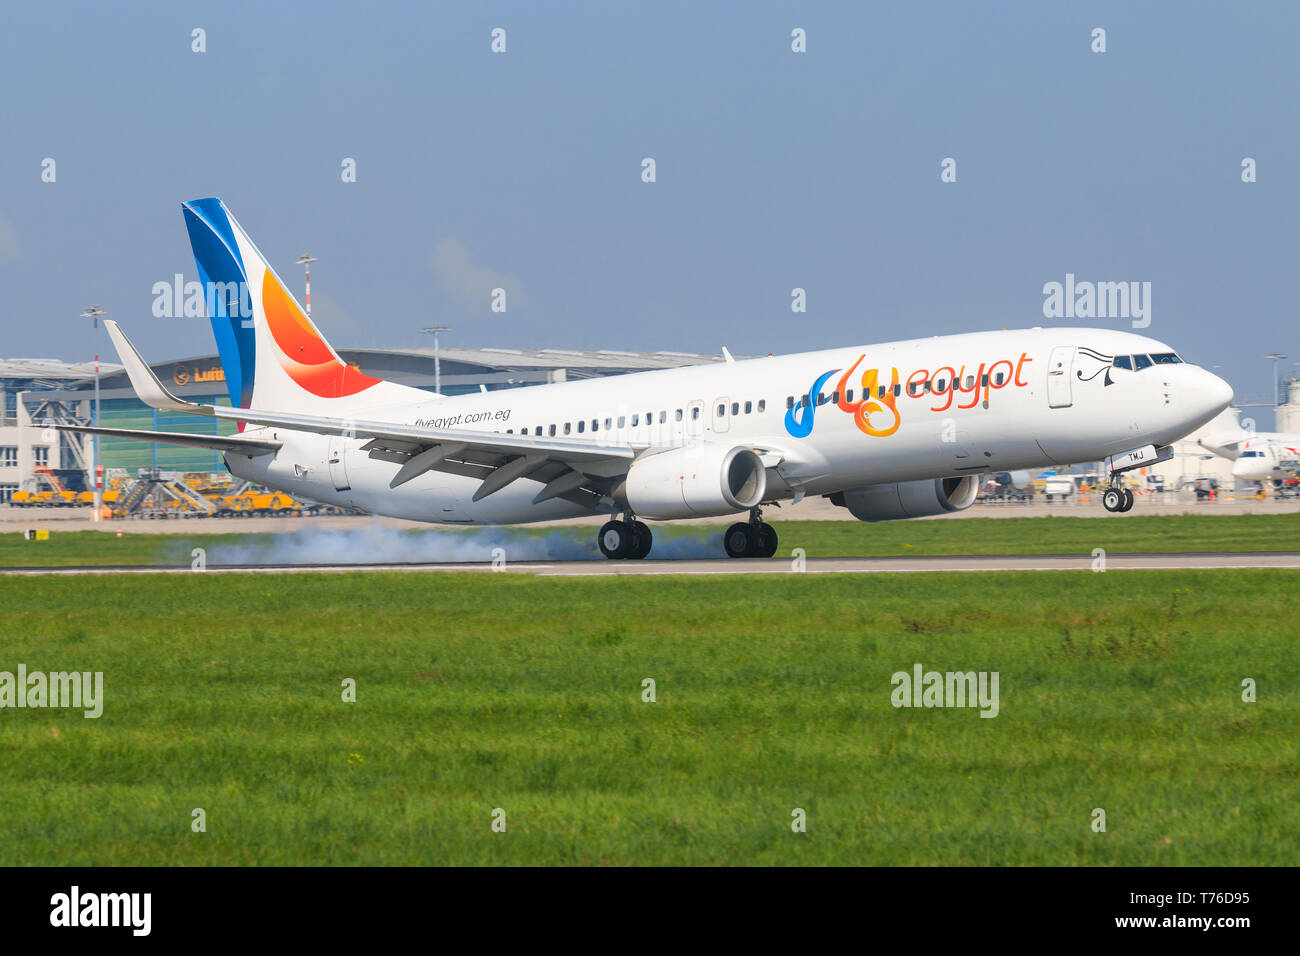 Stuttgart/Germany Mai 27, 2019: Fly Egypt Boeing 737 last flight at Stuttgart Airport. Stock Photo